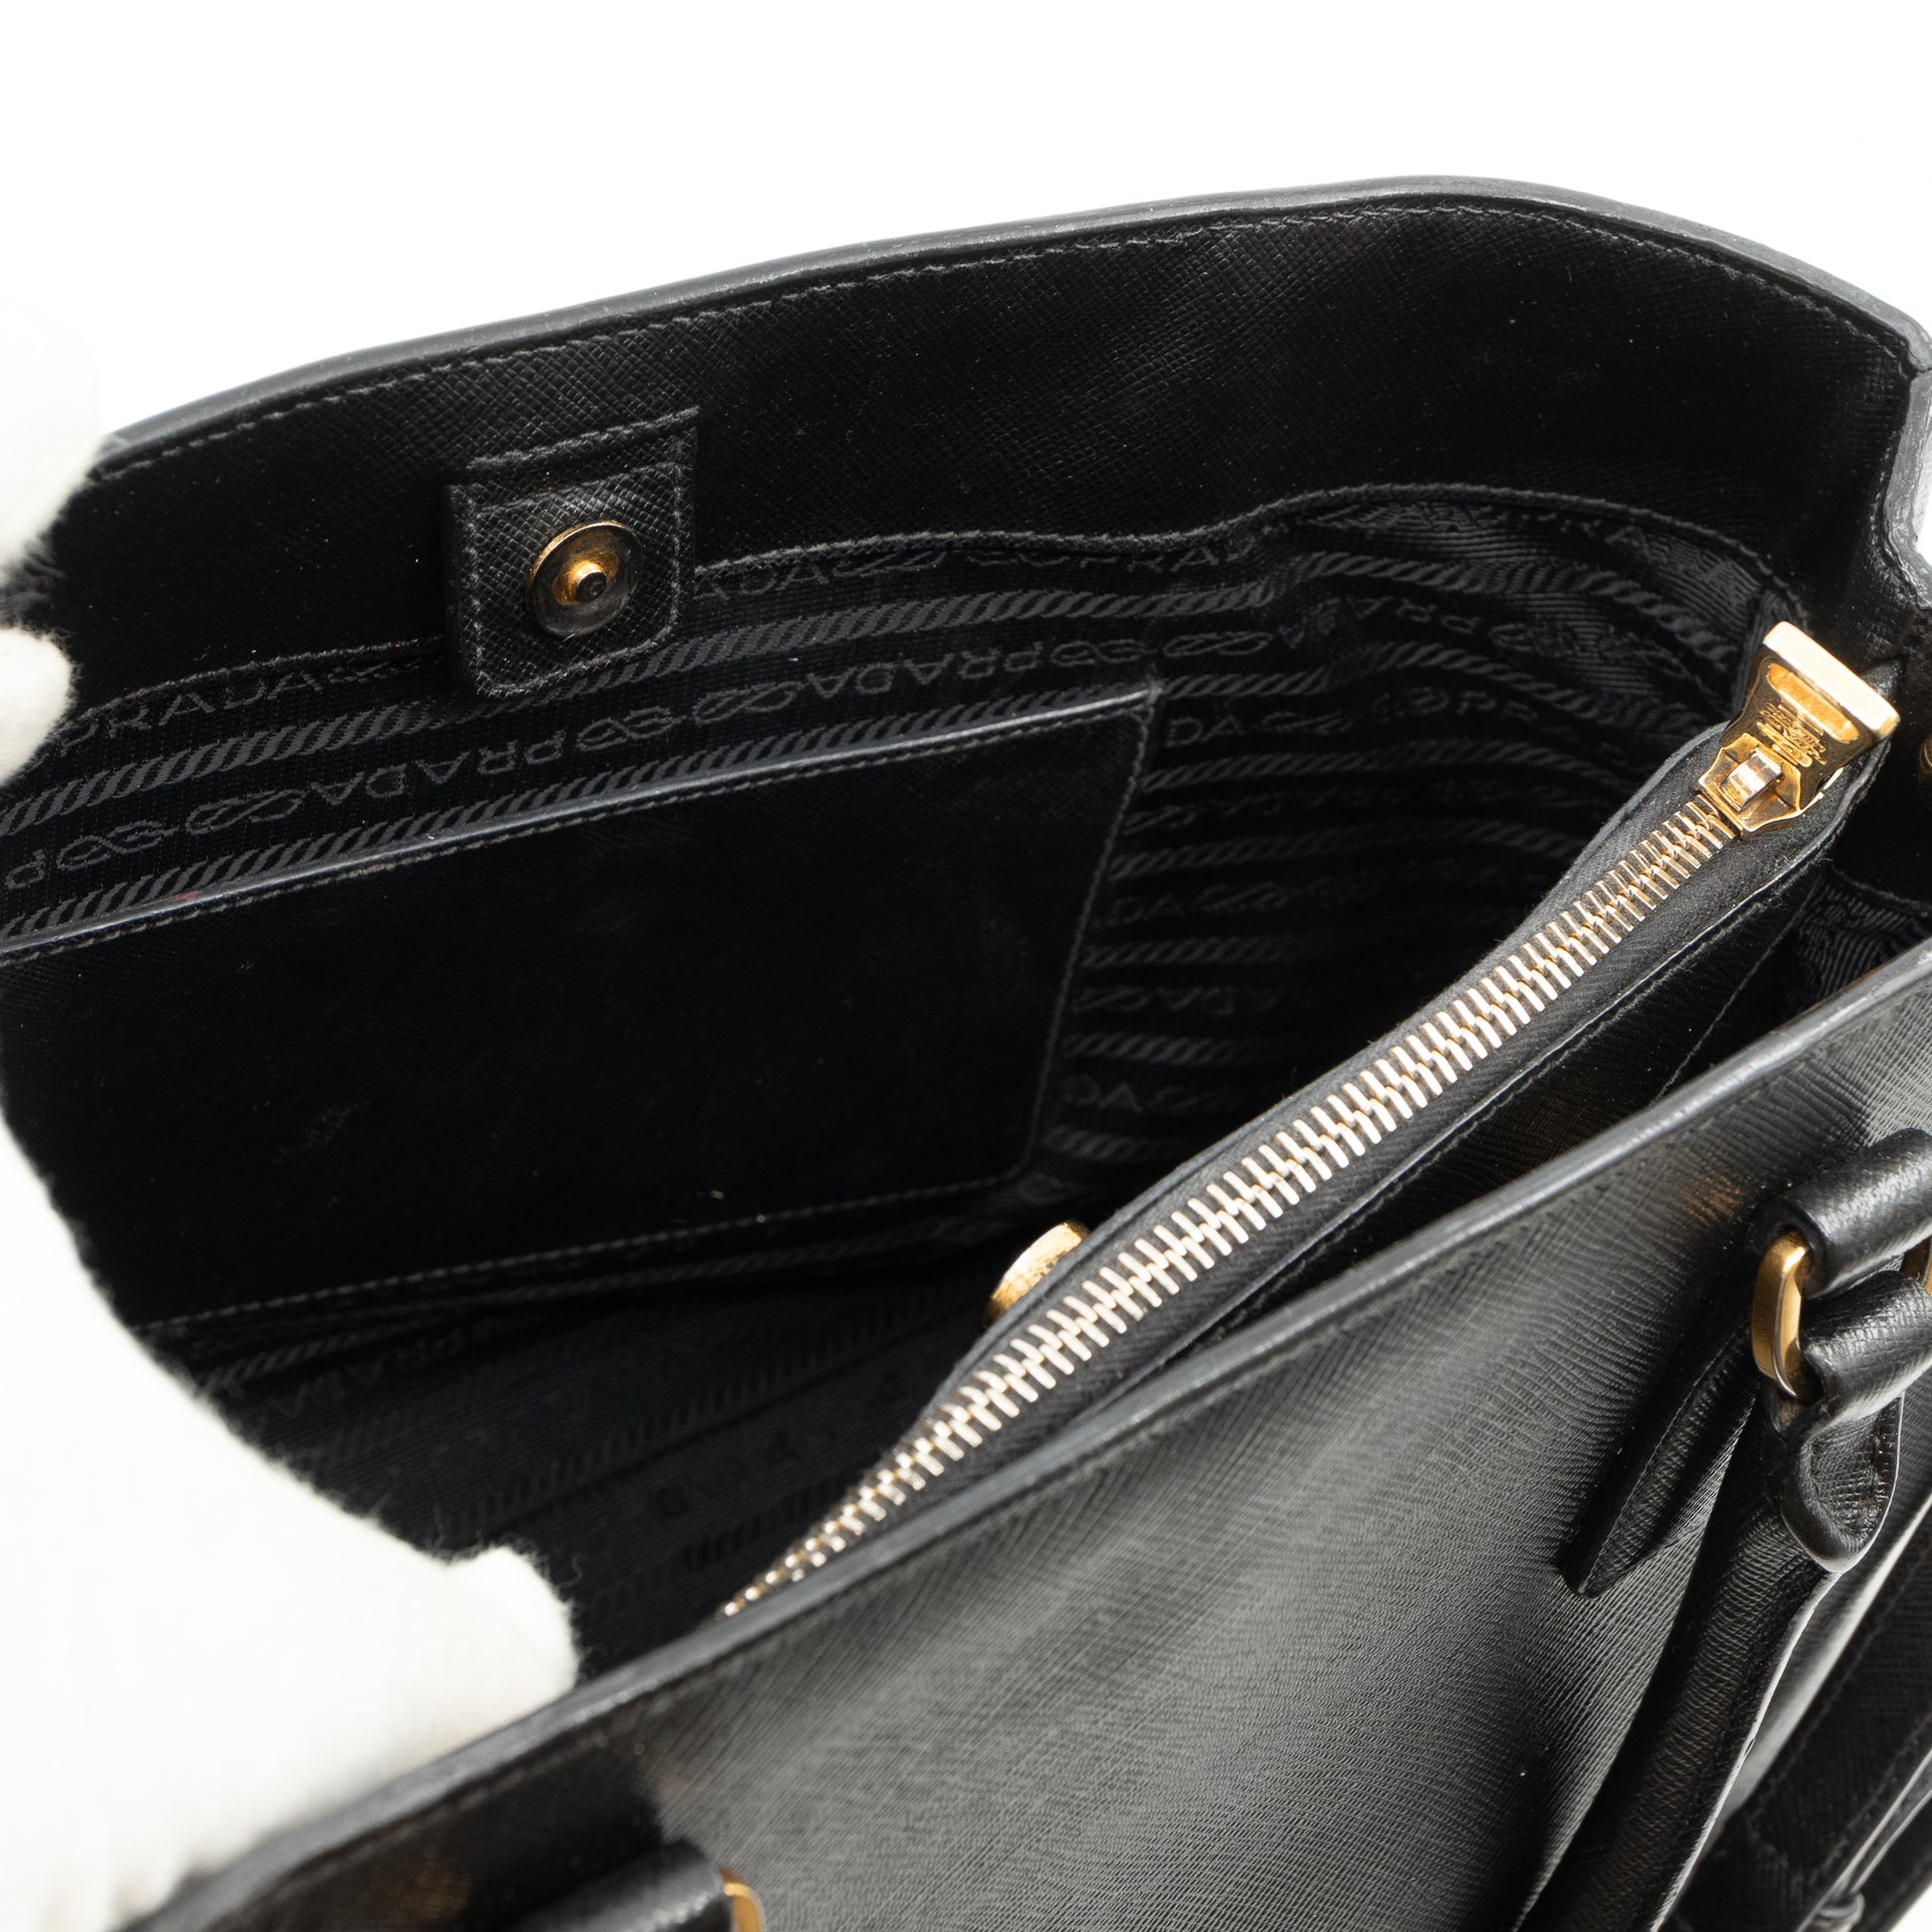 Galleria Saffiano Leather Tote in Black - Prada